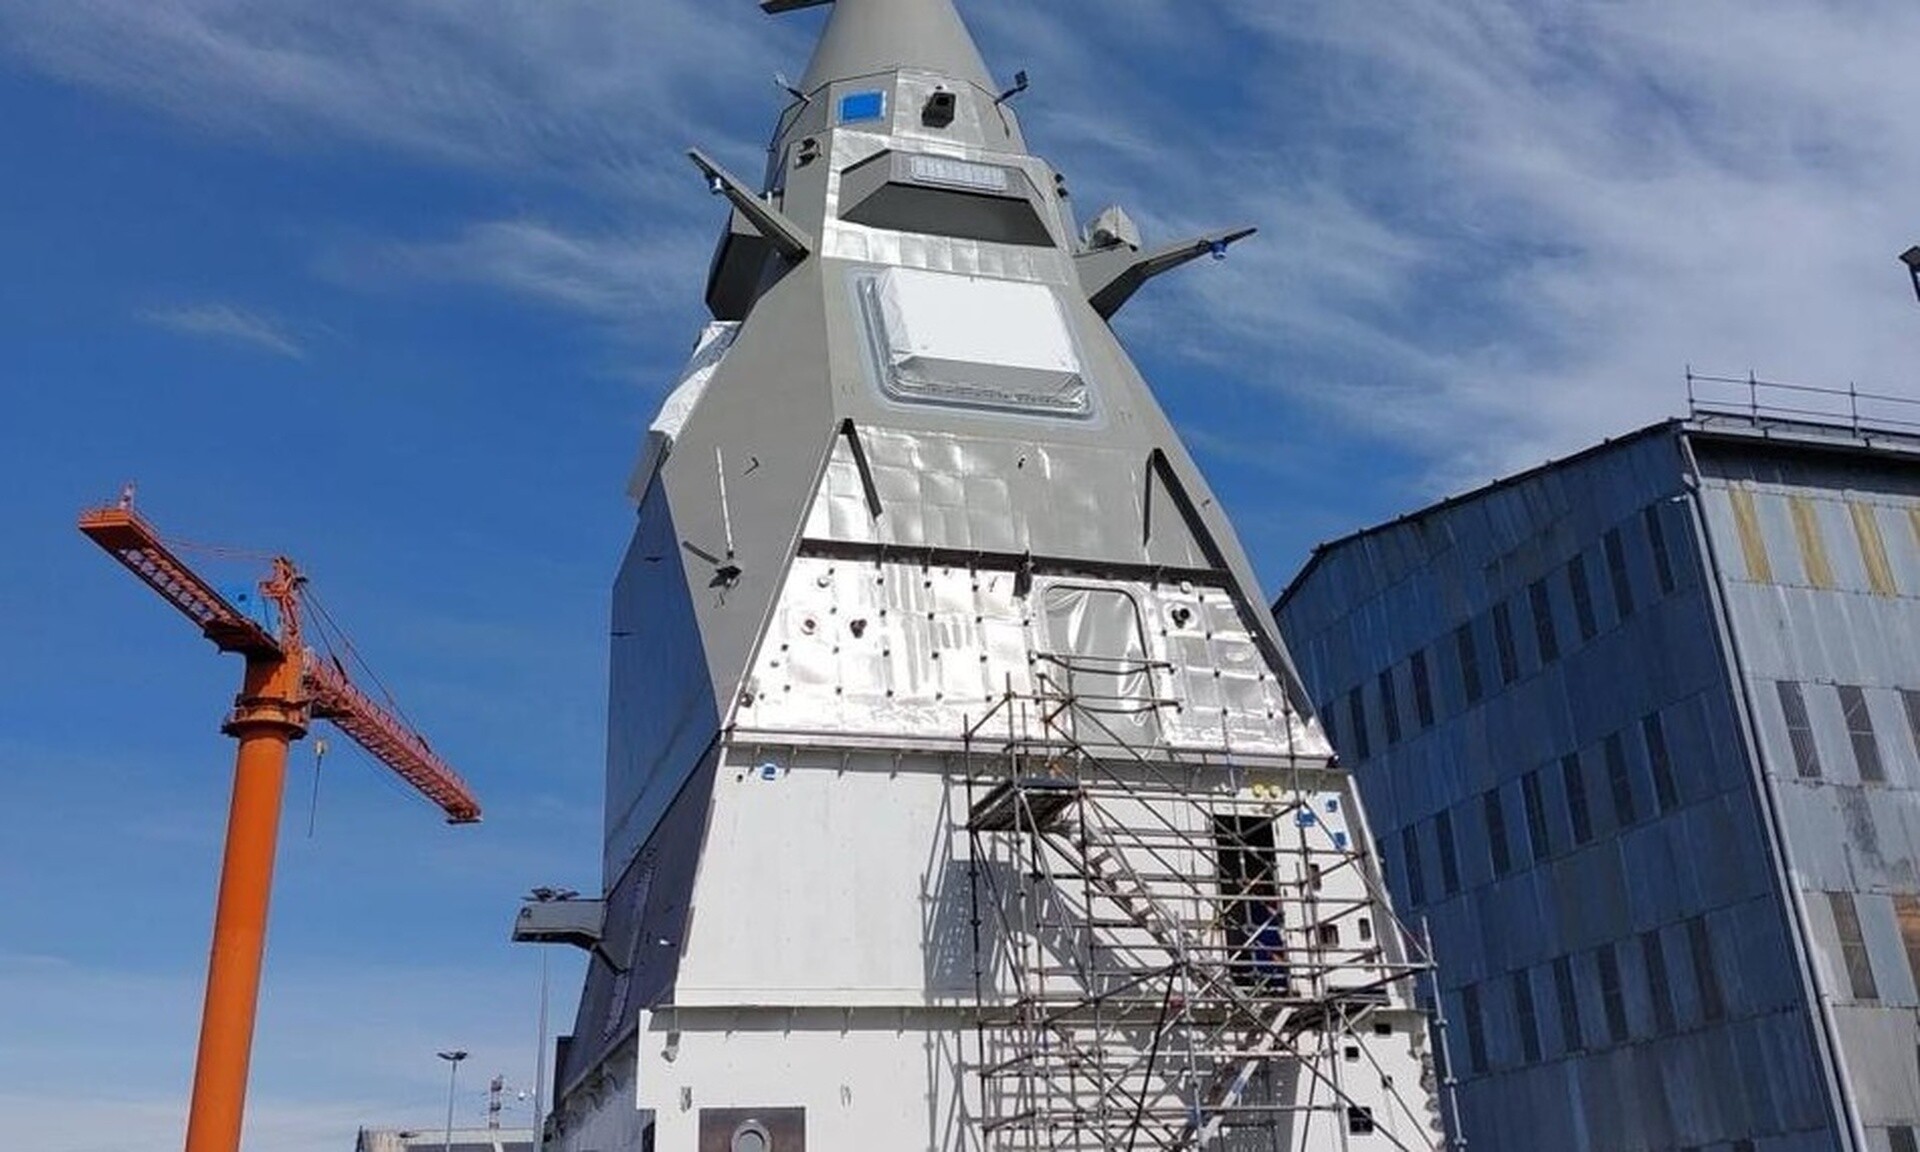 Η Φρεγάτα «Νέαρχος» απέκτησε τον ιστό της – Δείτε εικόνες από τη ναυτική βάση της Γαλλίας